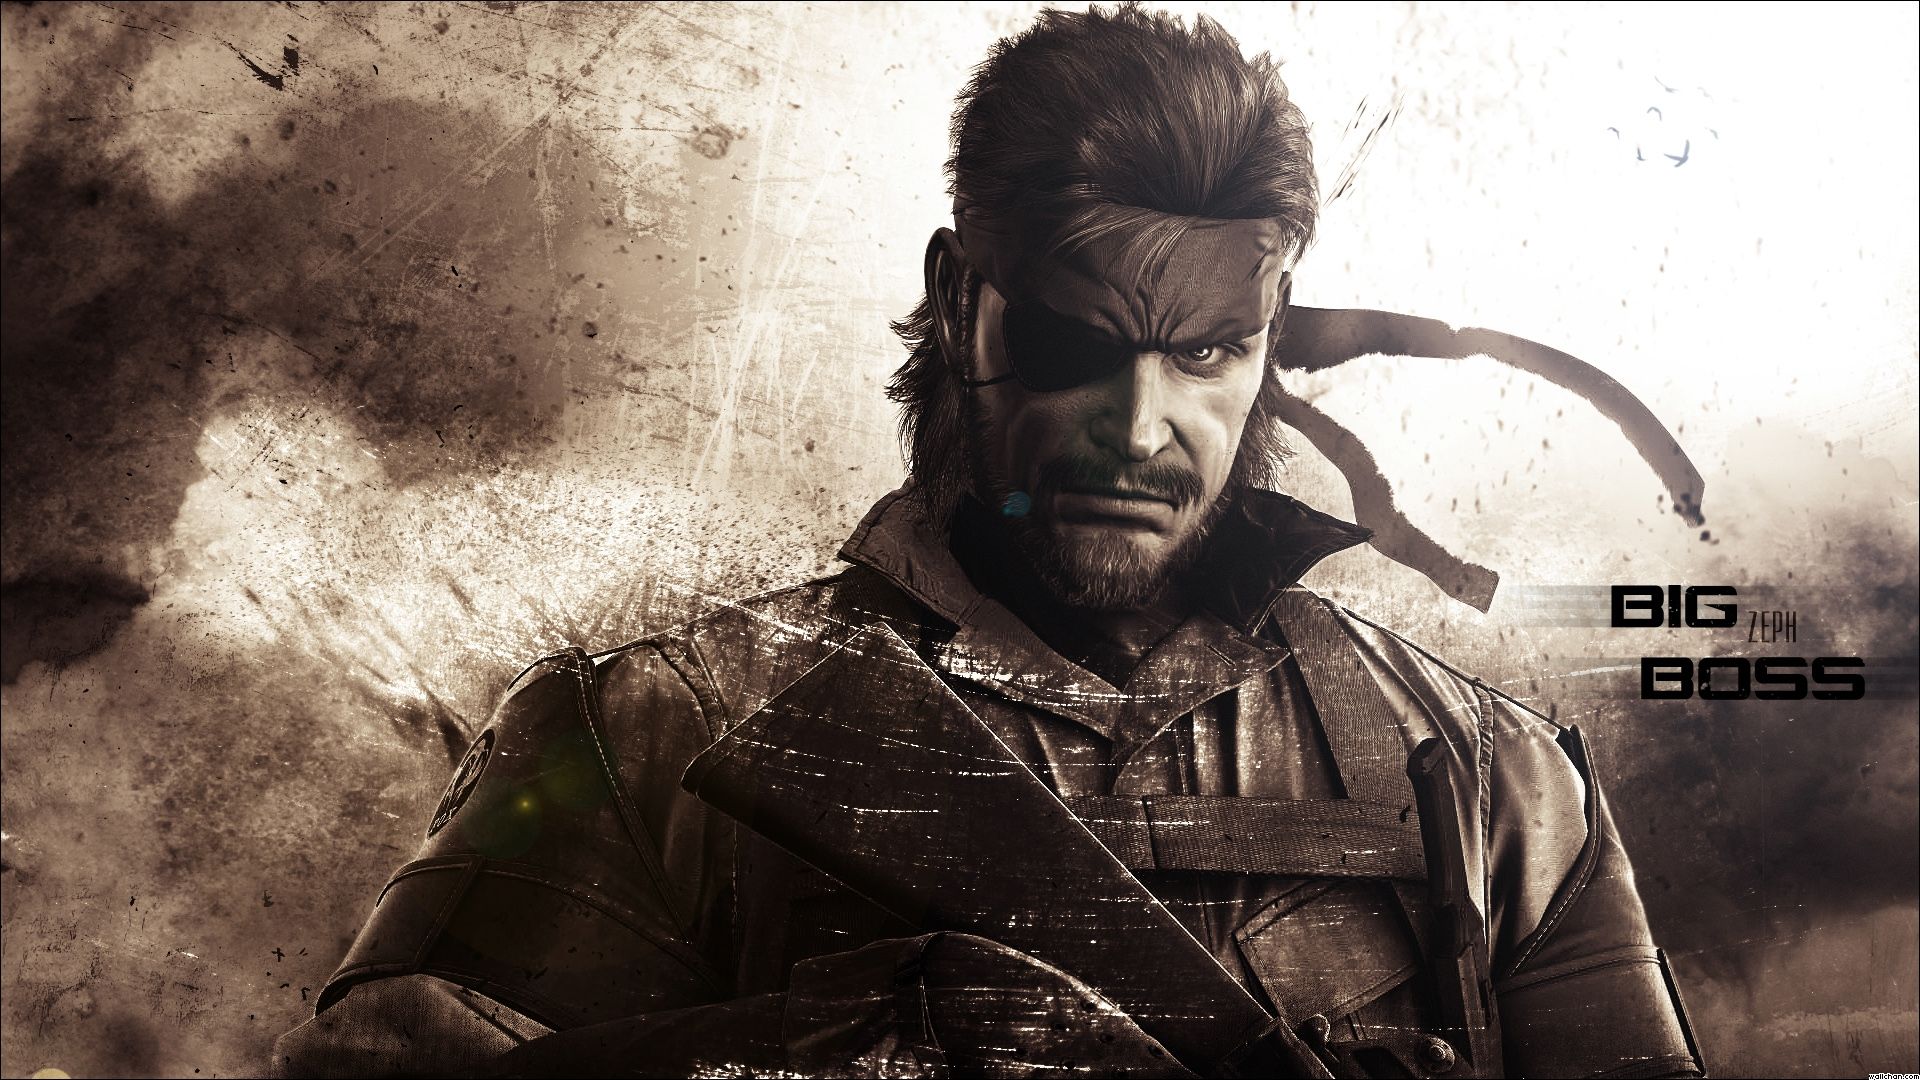 Metal Gear Solid HD Wallpaper | 1920x1080 | ID:27061